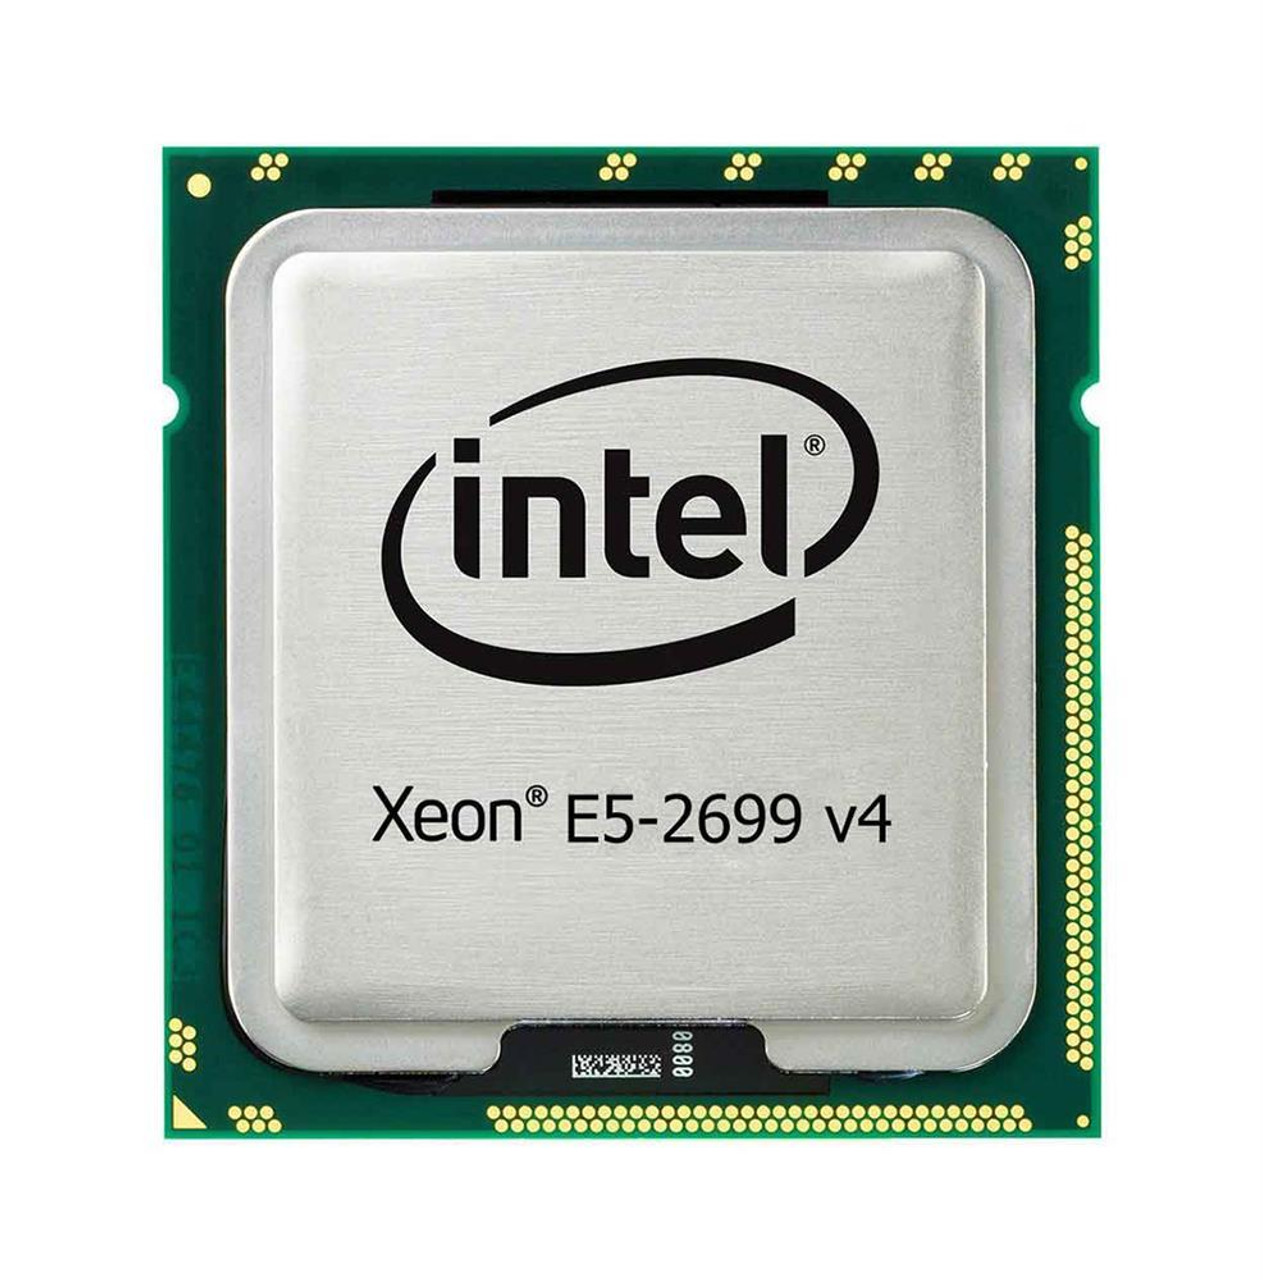 SuperMicro 2.20GHz 9.60GT/s QPI 55MB L3 Cache Socket FCLGA2011-3 Intel Xeon E5-2699 v4 22-Core Processor Upgrade